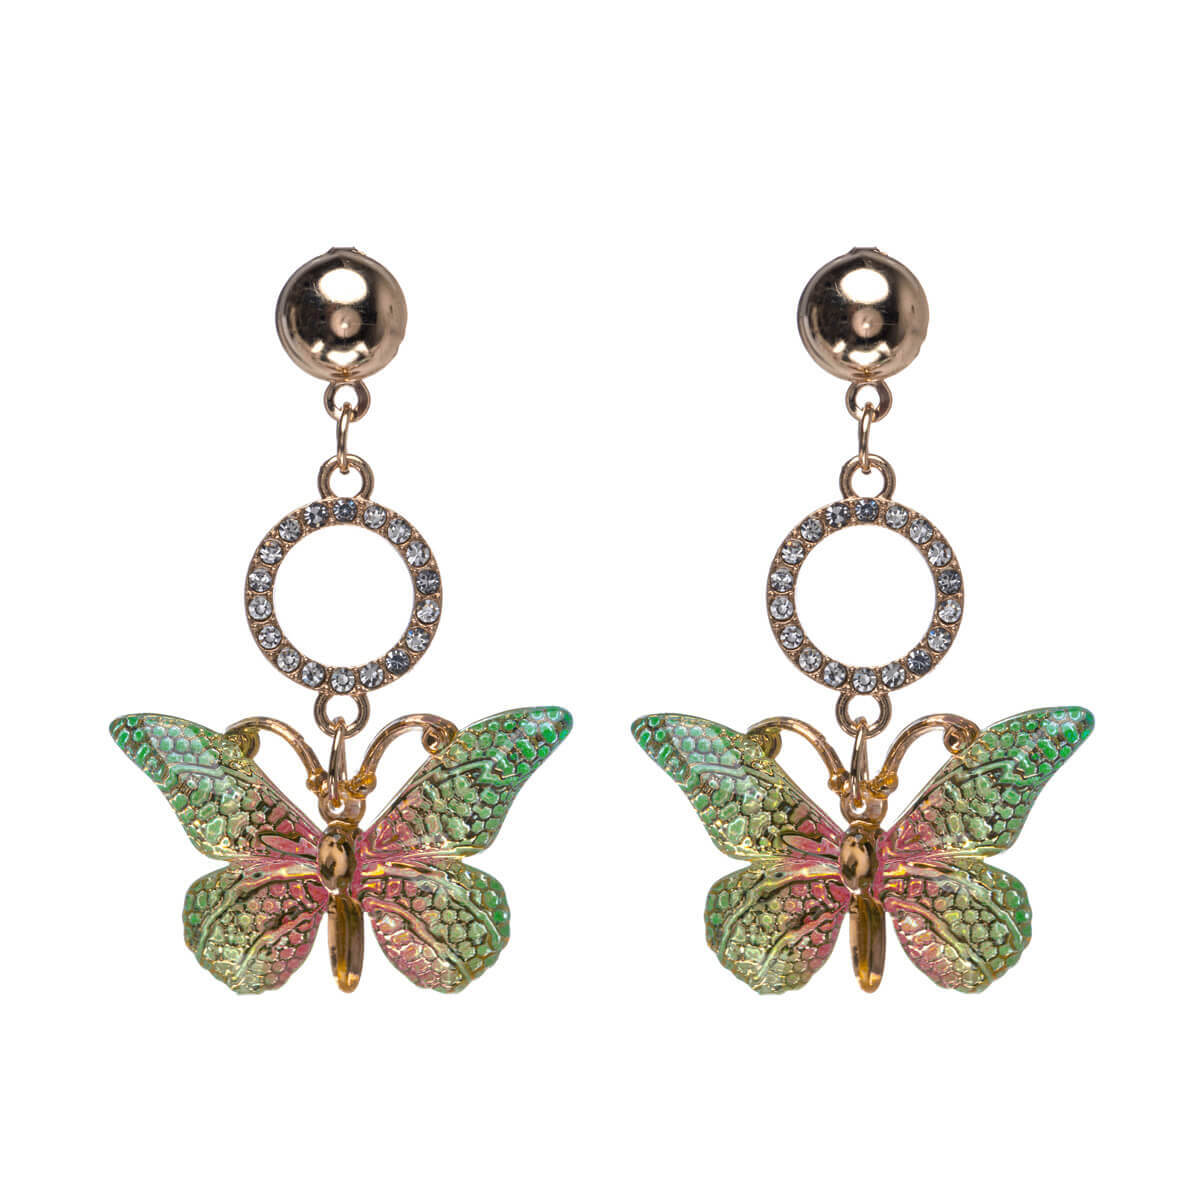 Sparkling butterfly earrings